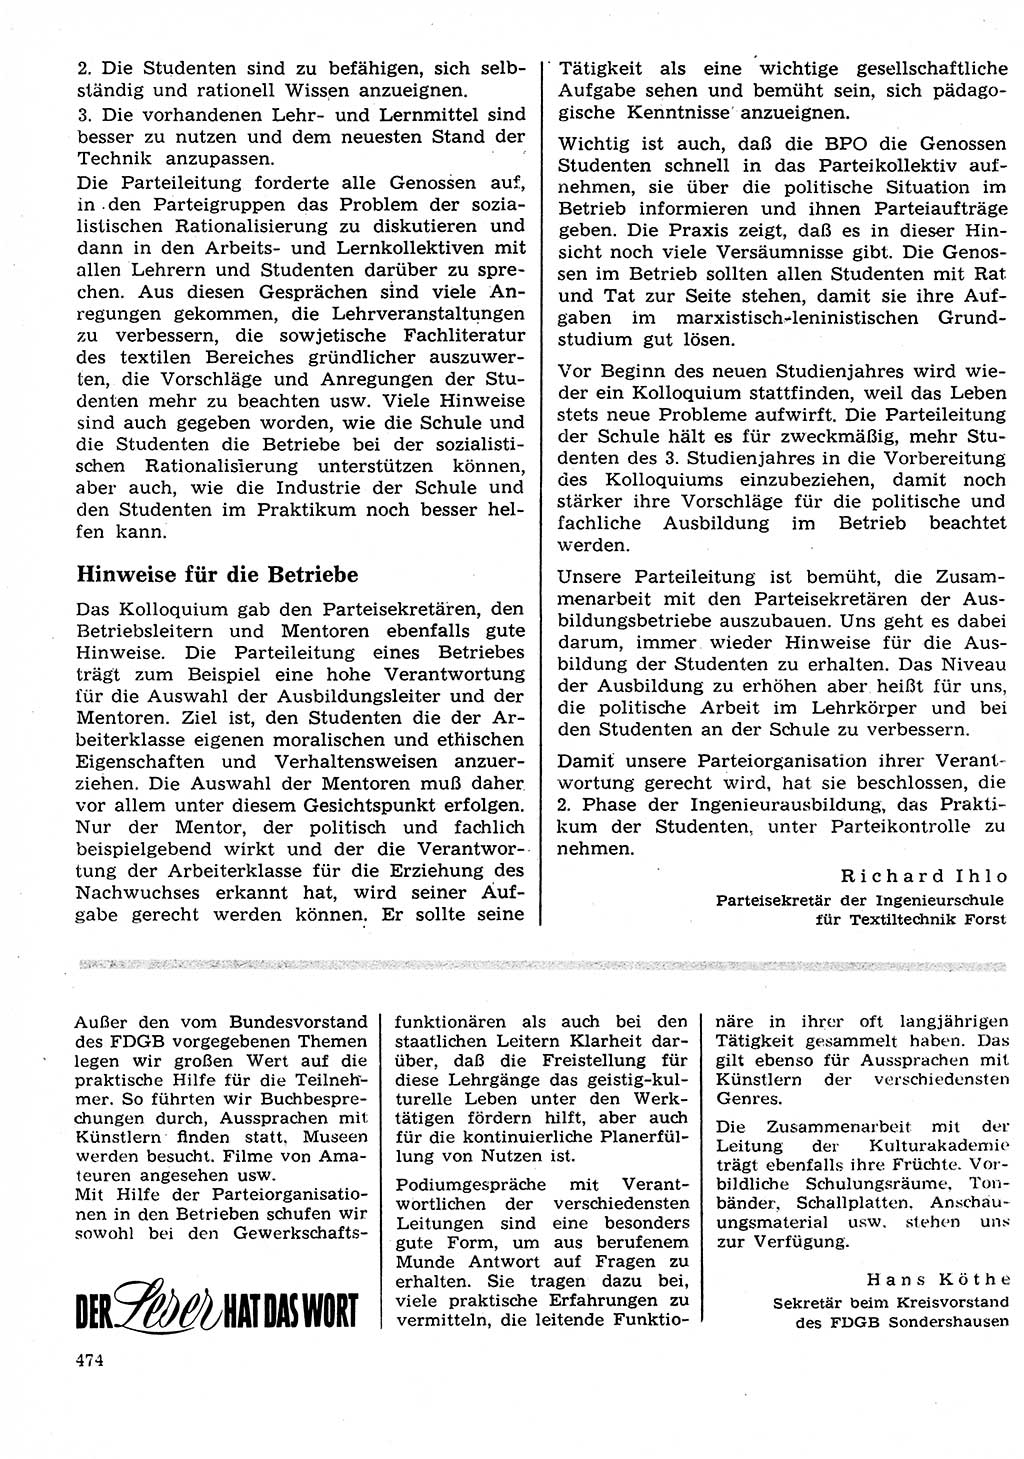 Neuer Weg (NW), Organ des Zentralkomitees (ZK) der SED (Sozialistische Einheitspartei Deutschlands) für Fragen des Parteilebens, 27. Jahrgang [Deutsche Demokratische Republik (DDR)] 1972, Seite 474 (NW ZK SED DDR 1972, S. 474)